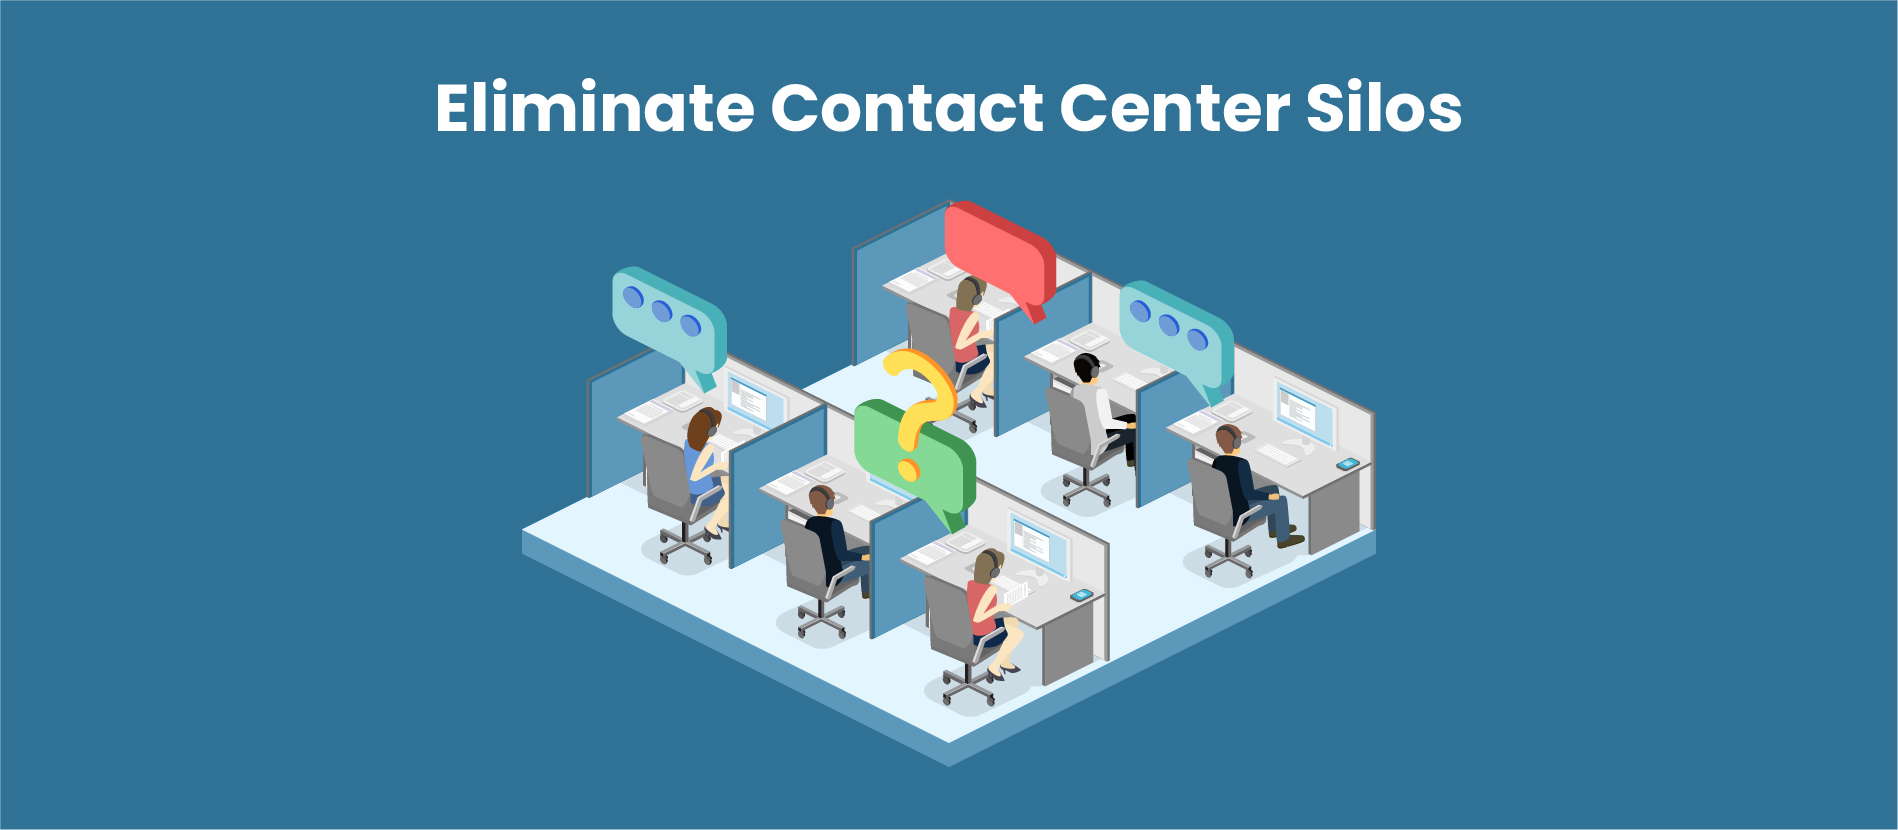 Eliminate Contact Center Silos